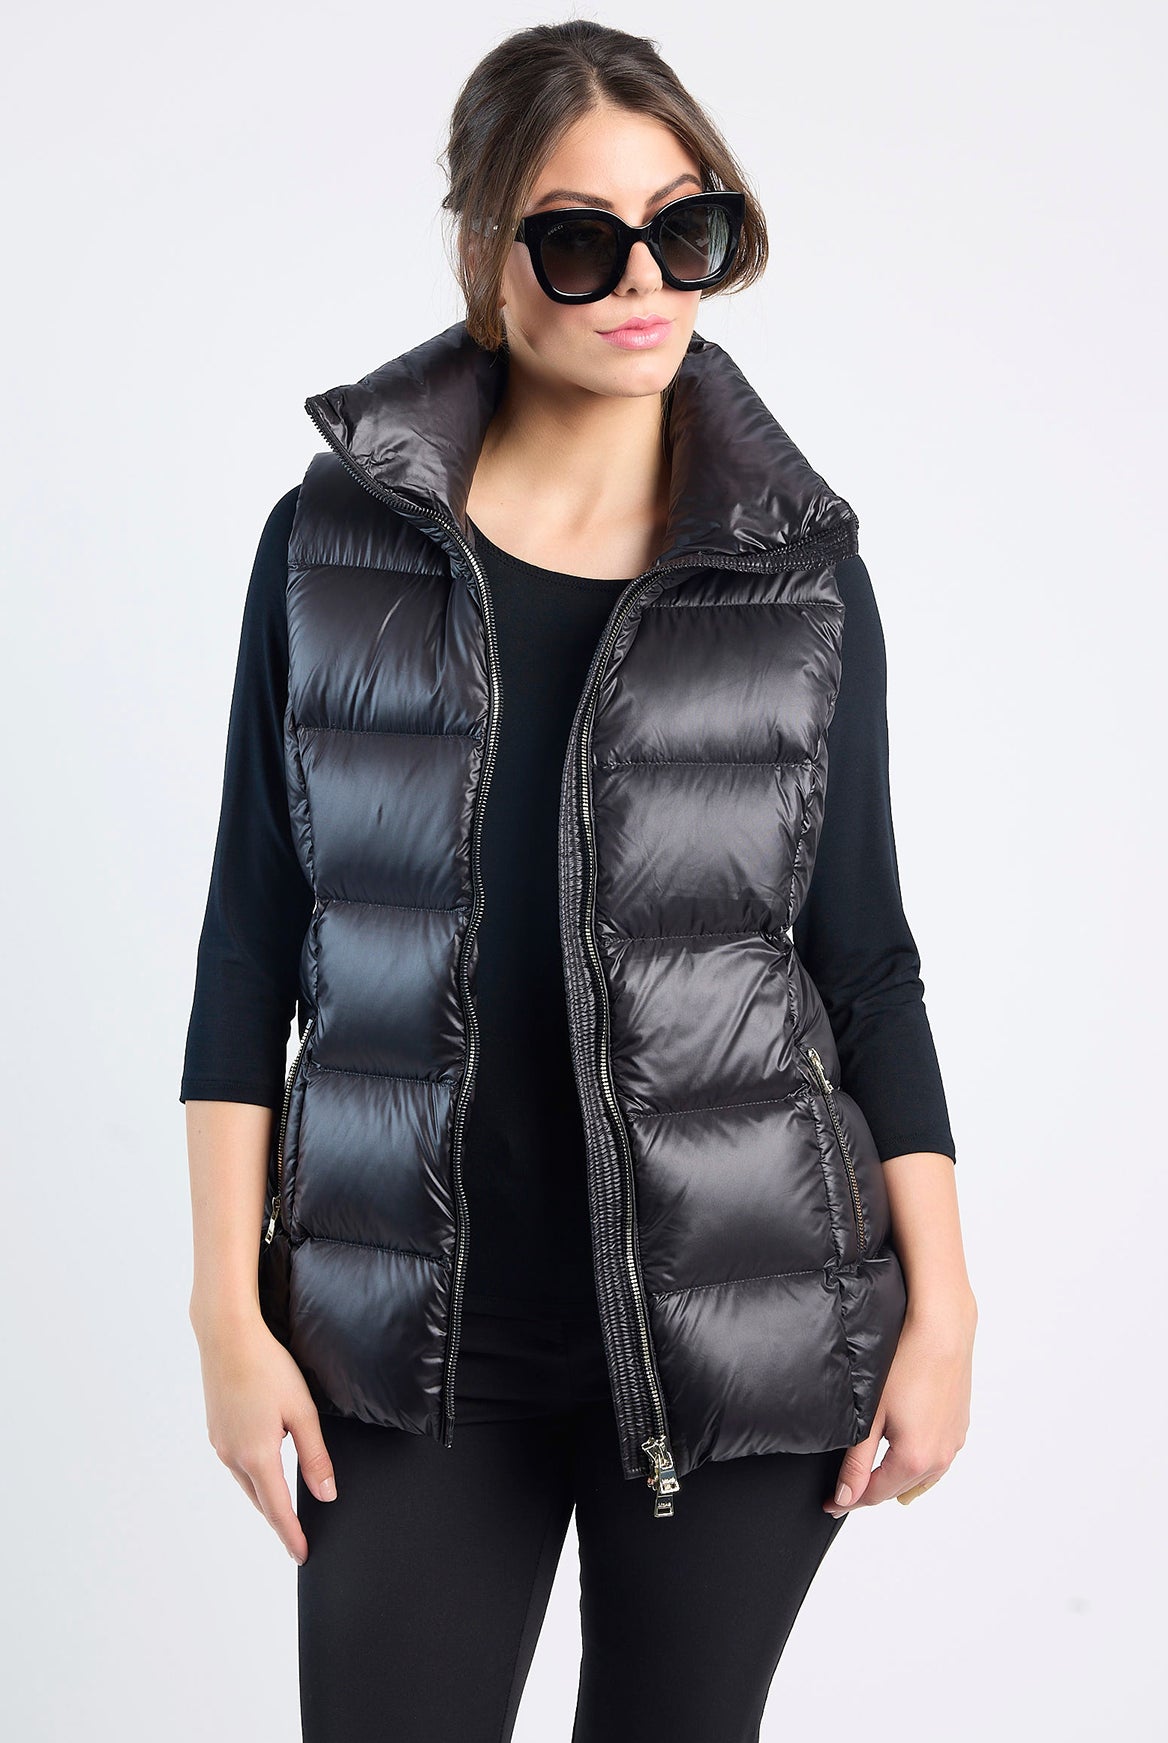 MOKÉ Ester Packable Vest in Black - Magpie Style